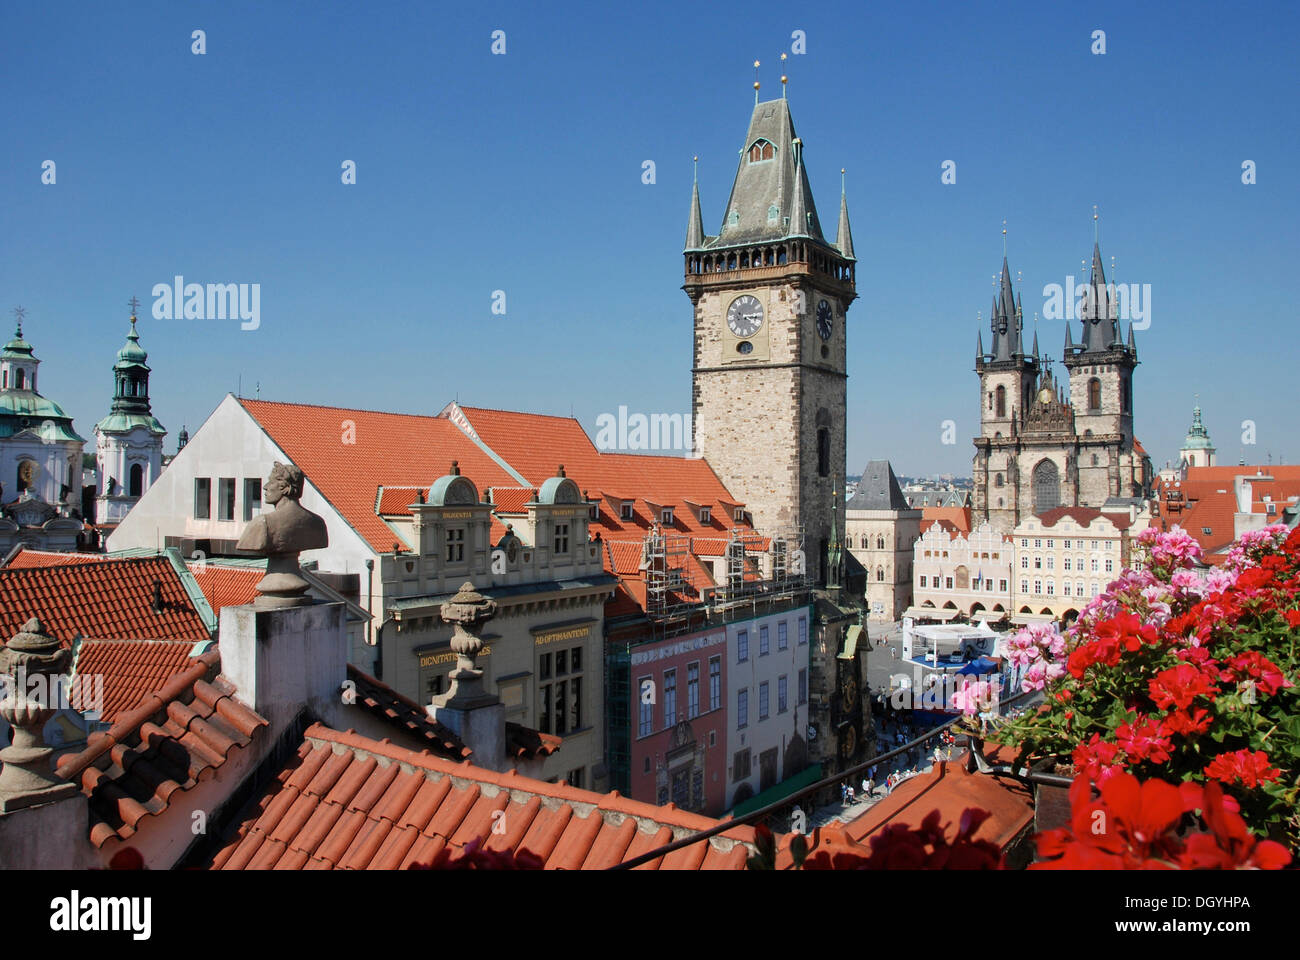 Altes Rathaus, Tyn Kirche, hotel U Prince Terrasse, Altstädter Ring in Prag, Altstadt, Tschechische Republik, Tschechische Republik, Europa Stockfoto